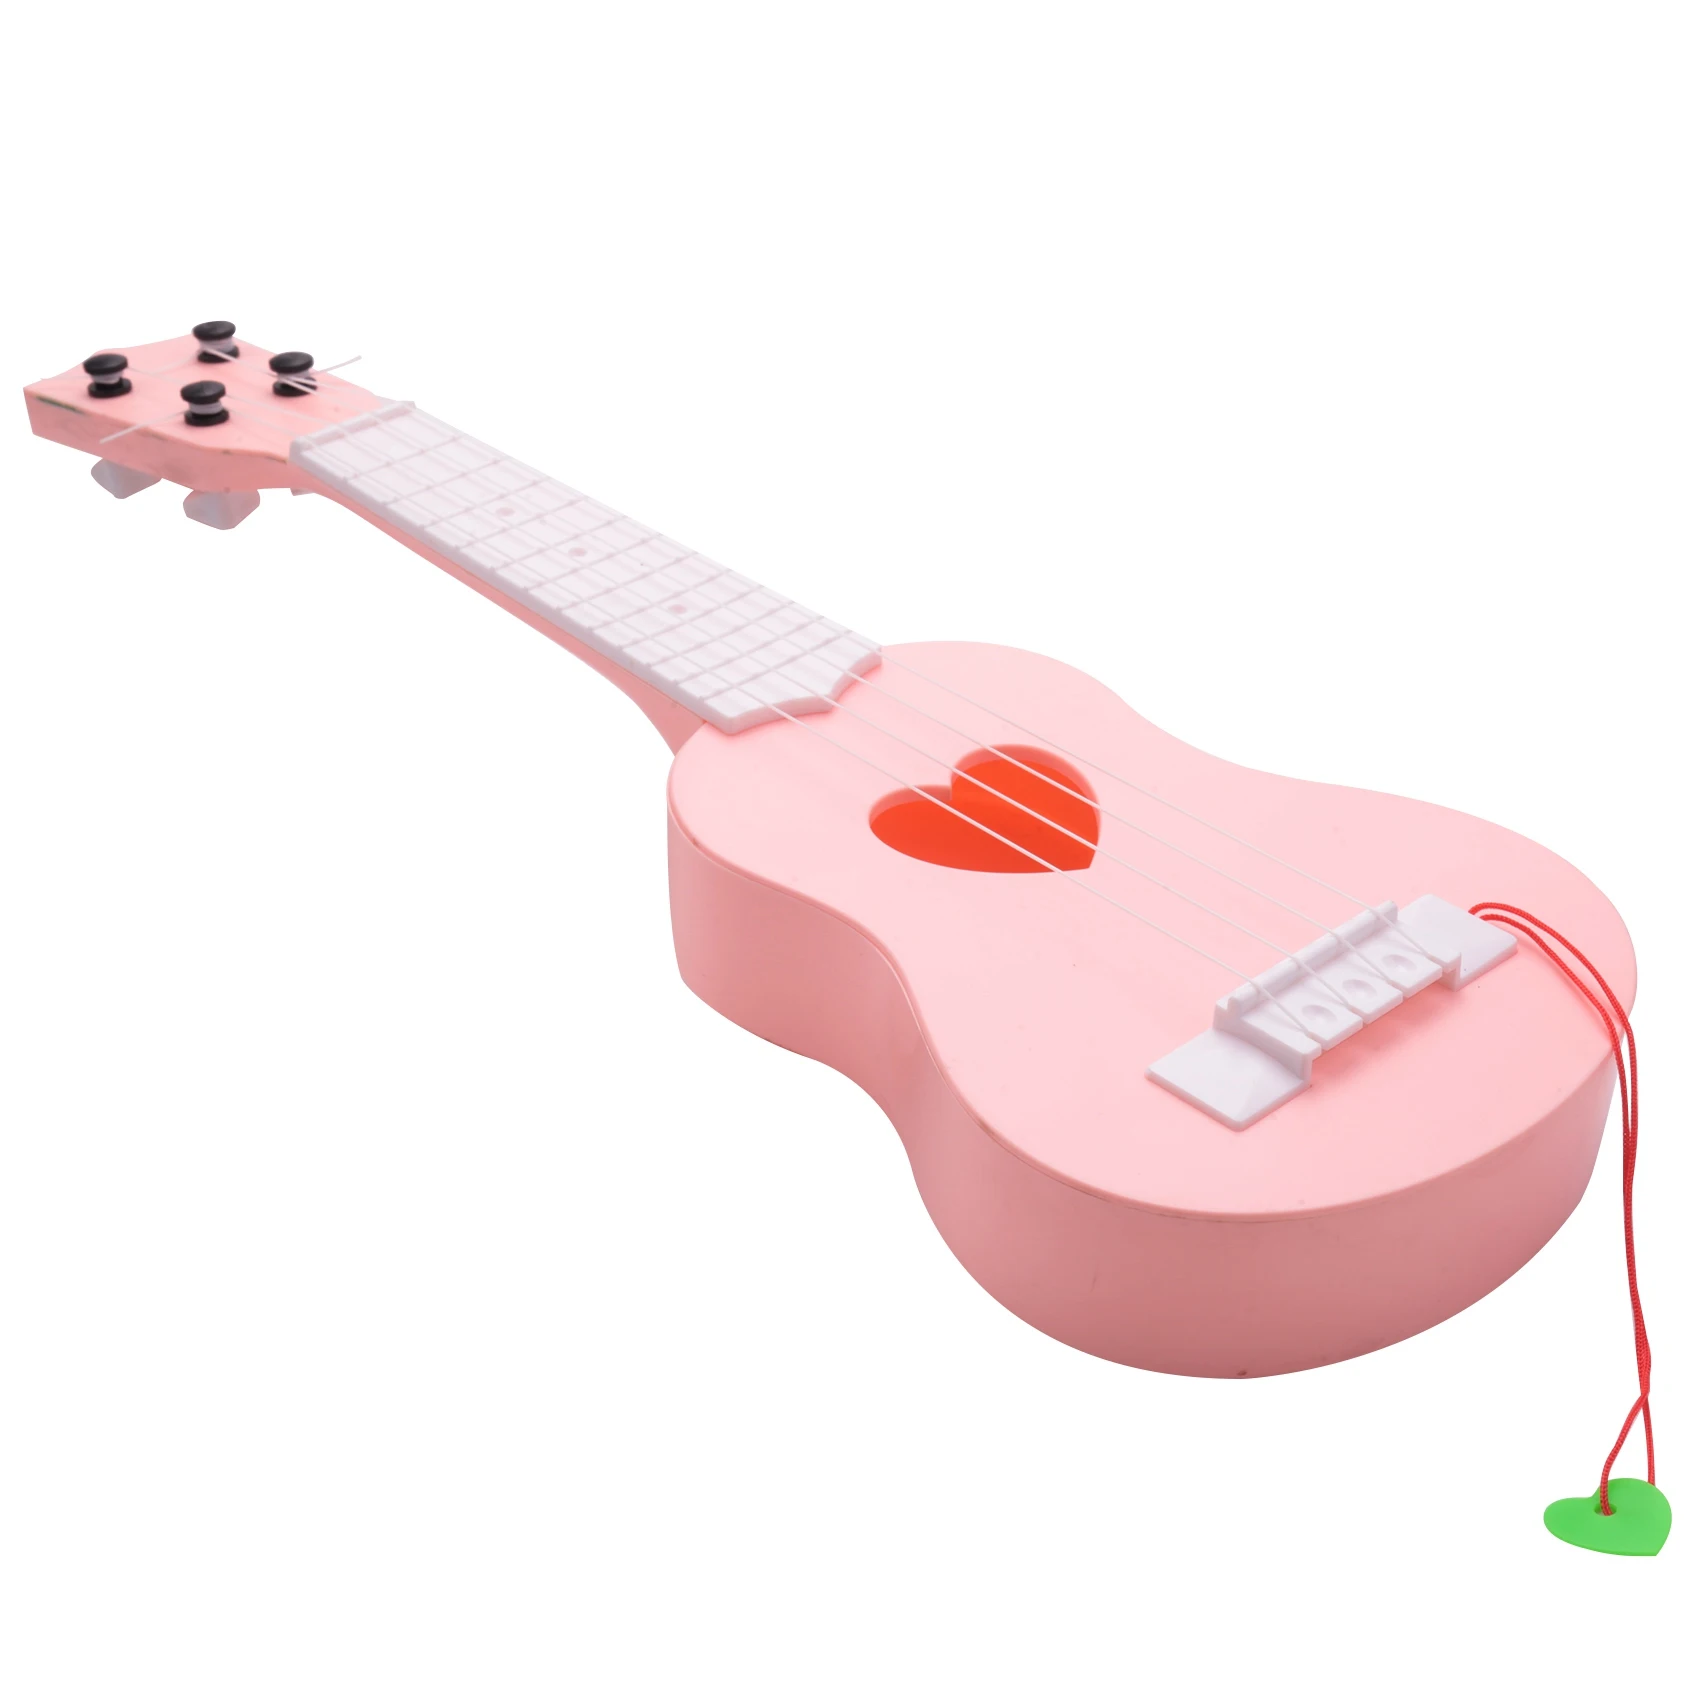 

Игрушечное укулеле для начинающих укулеле гитара для детей обучающий музыкальный инструмент игрушка мини милое укулеле, розовое